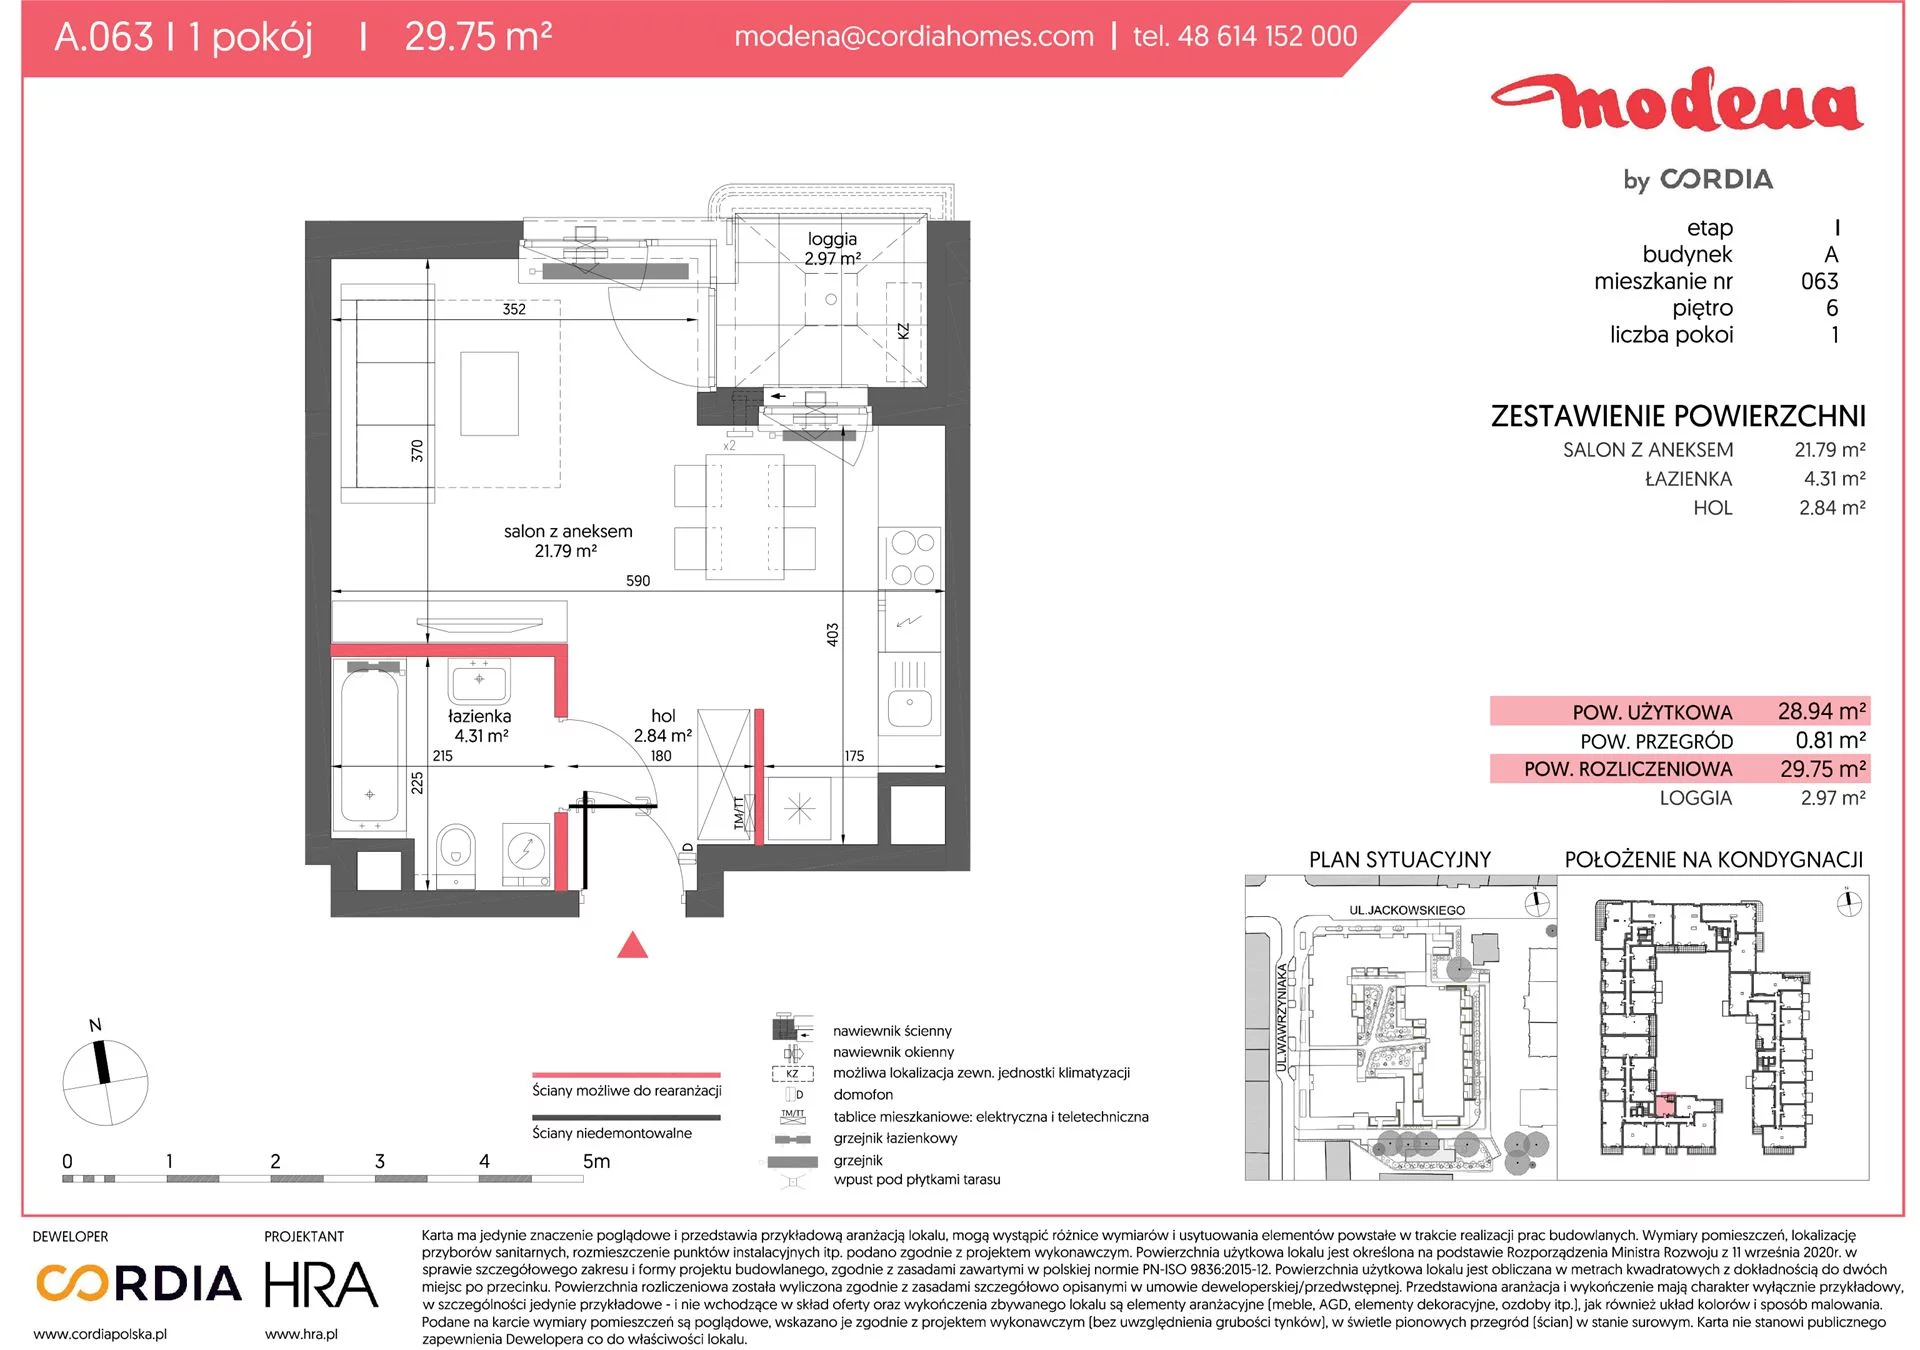 Mieszkanie 29,75 m², piętro 6, oferta nr A.063, Modena, Poznań, Jeżyce, Jeżyce, ul. Jackowskiego 24